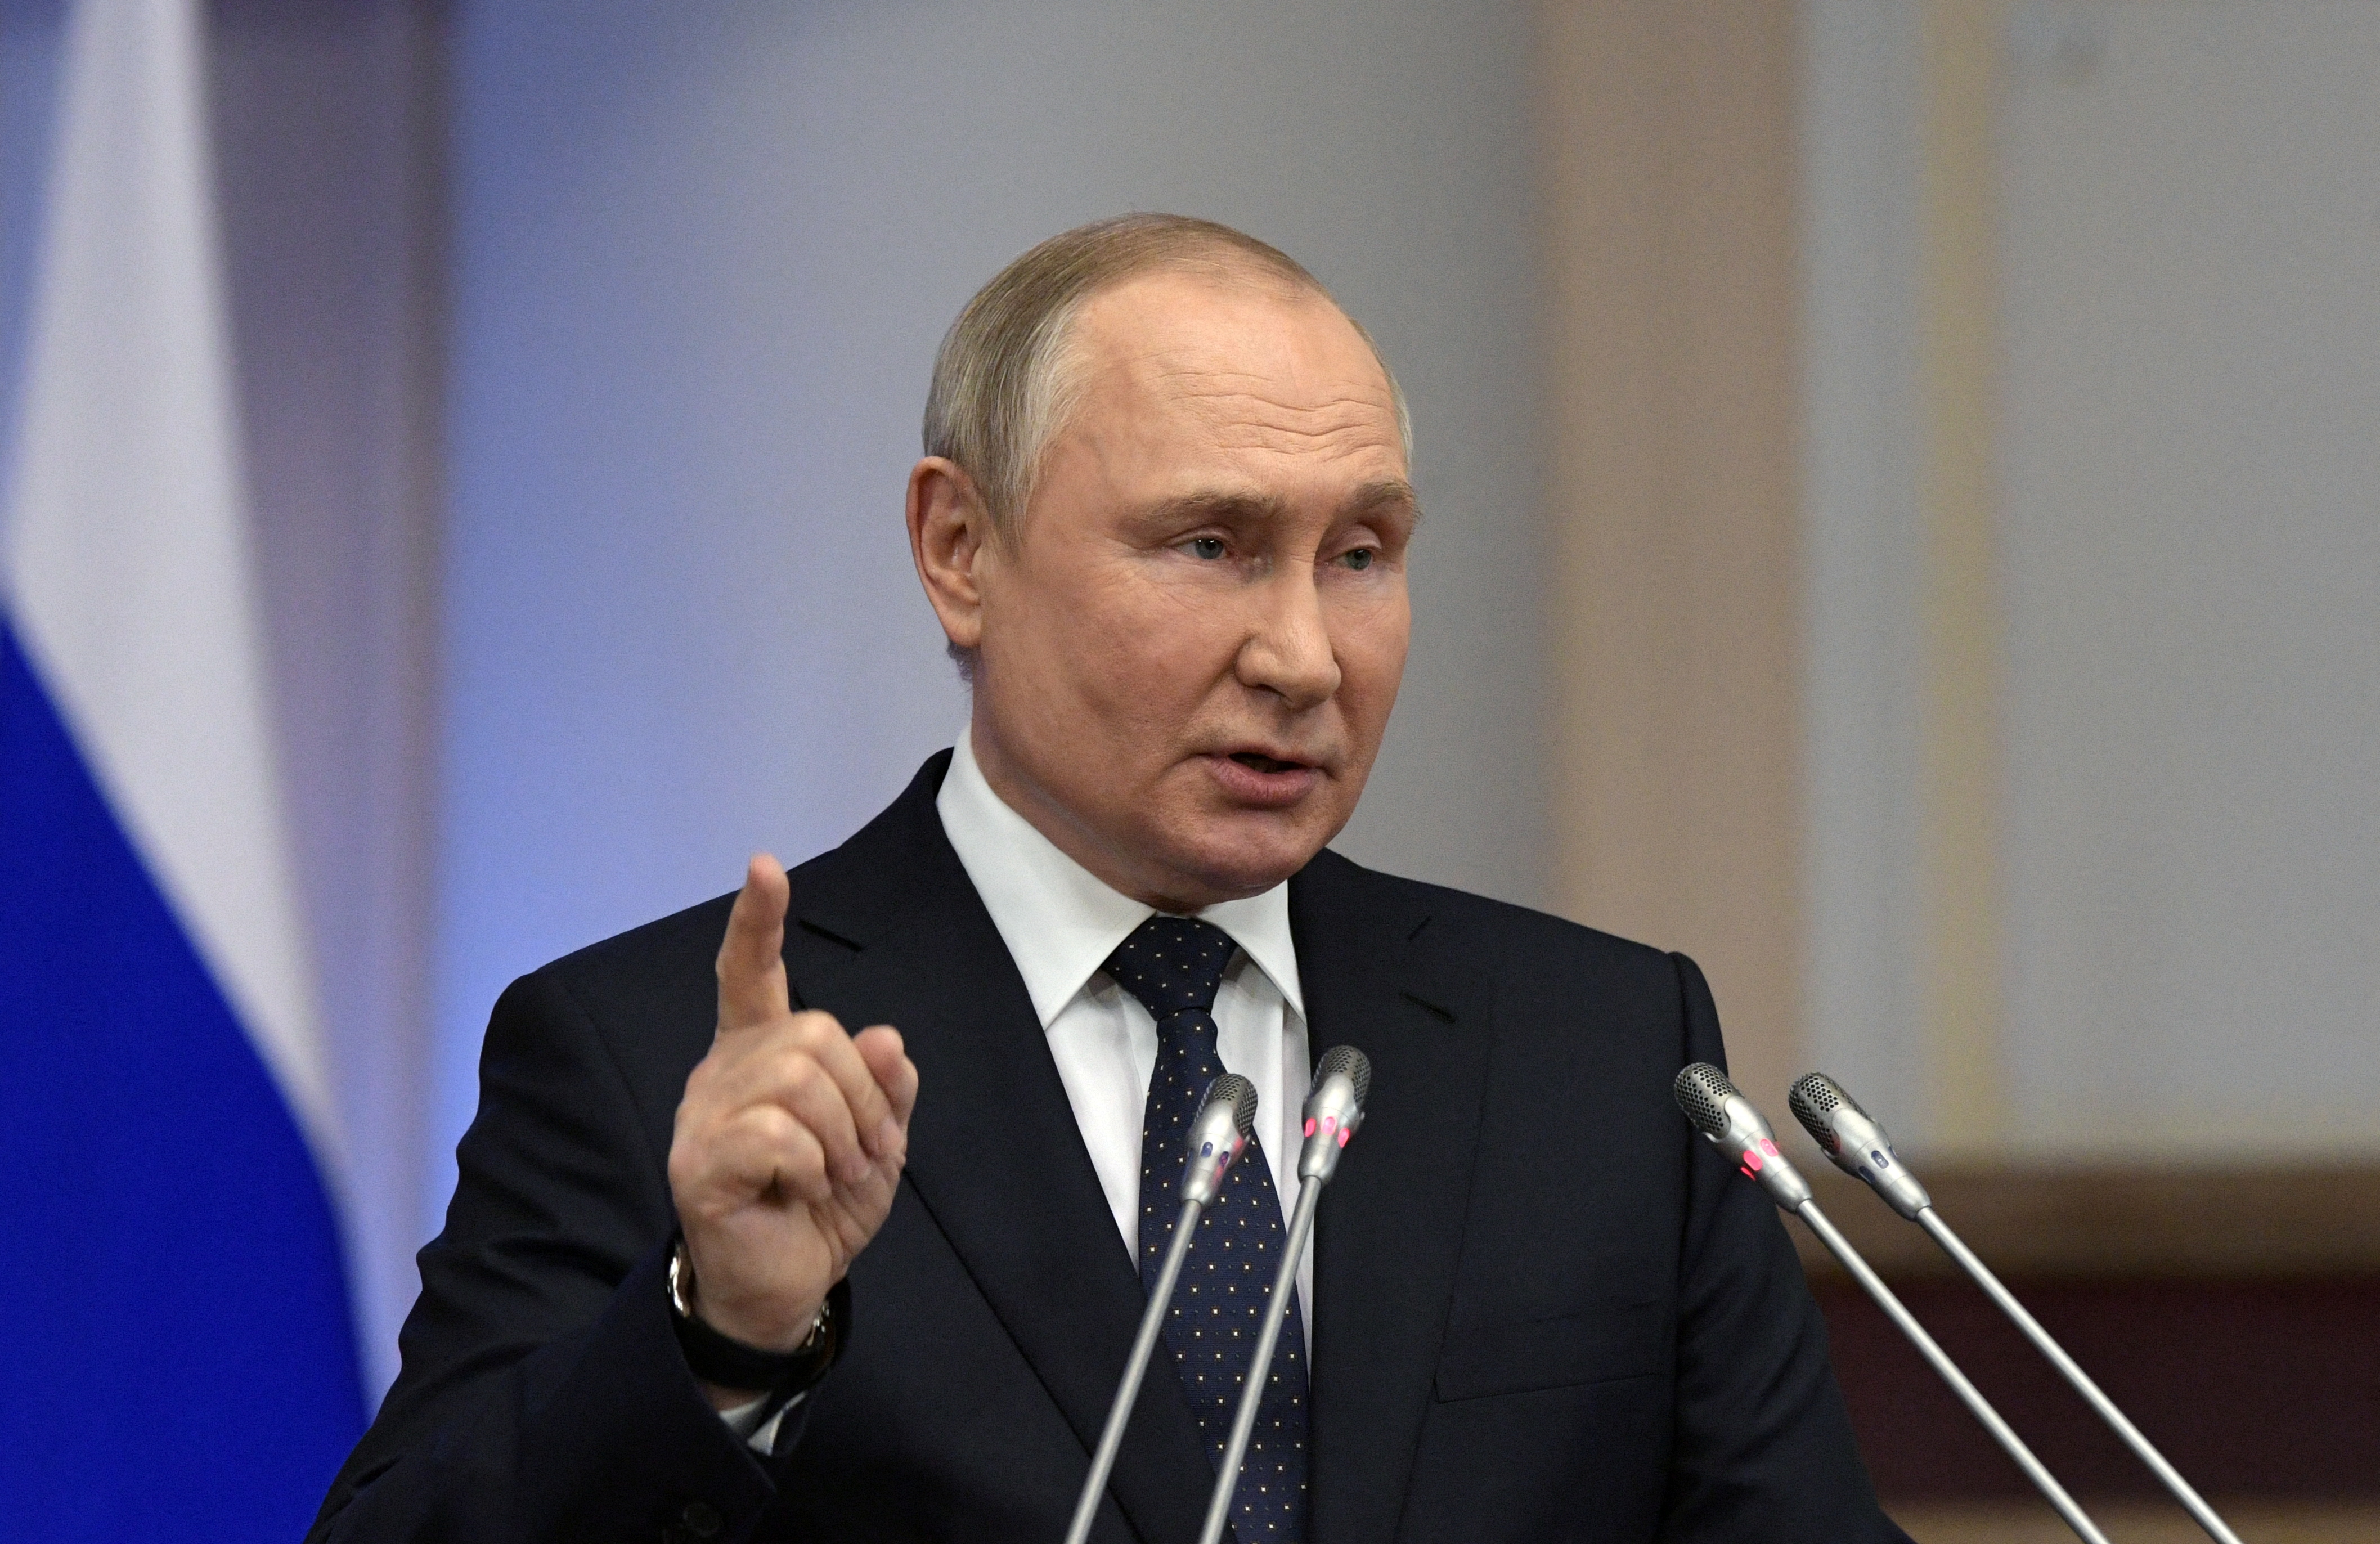 Venäjän presidentti Vladimir Putin pitää puheen lainsäätäjien neuvoston kokouksessa liittokokouksessa Pietarissa